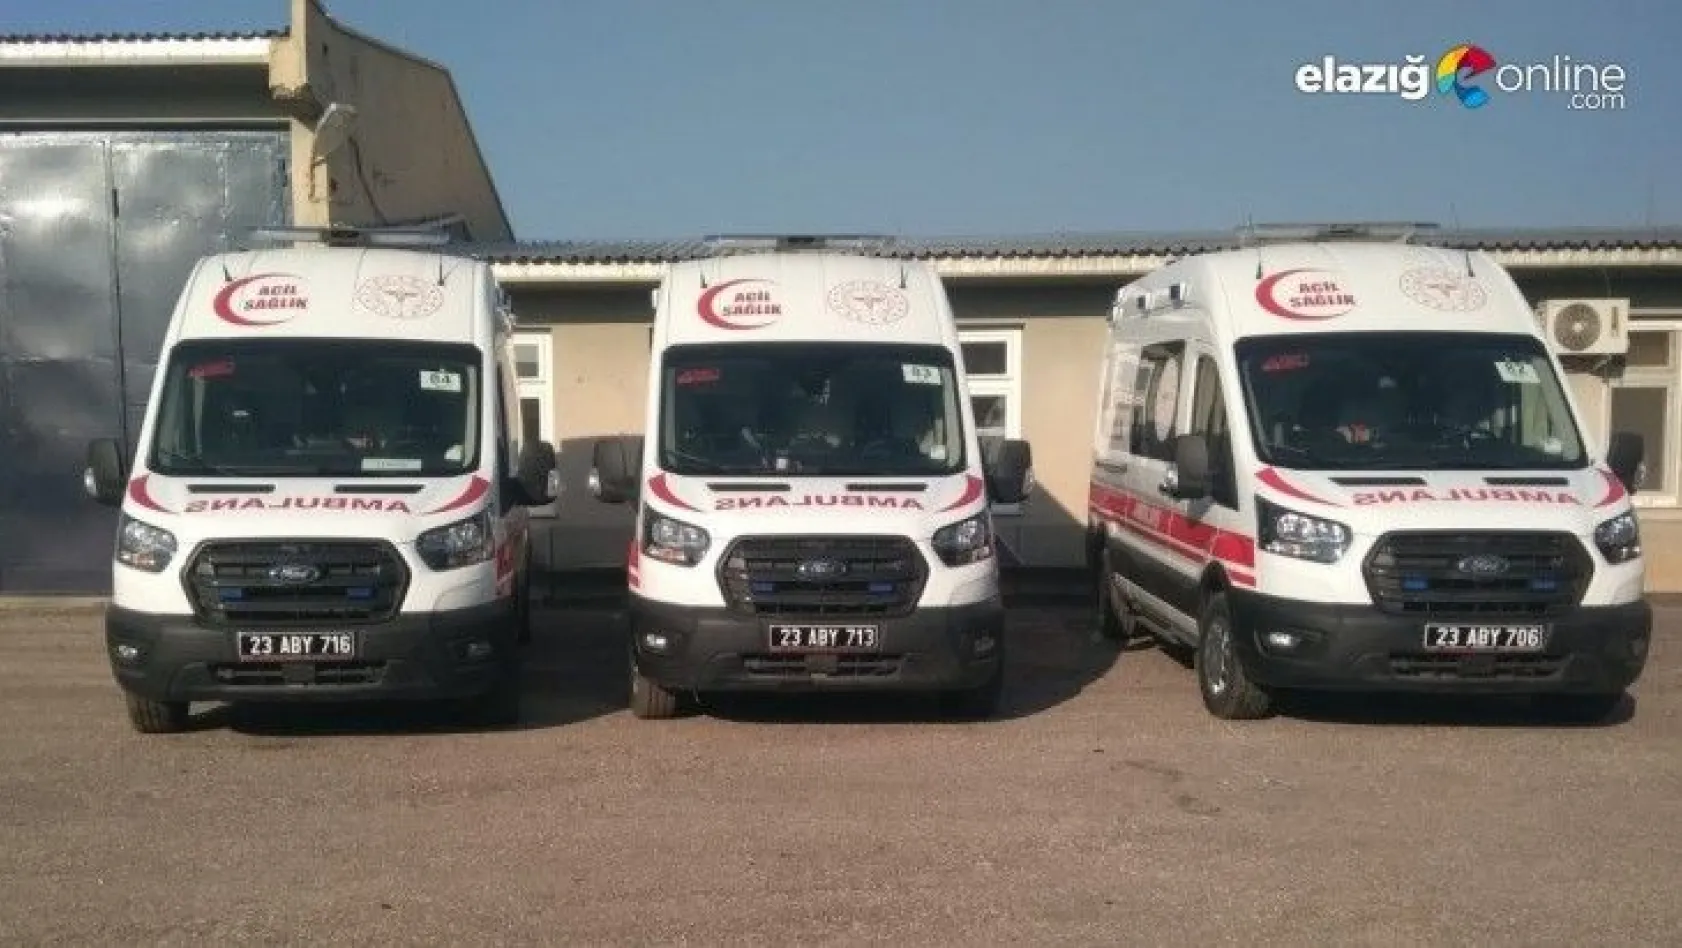 Elazığ'da 4 yeni ambulans hizmete girdi